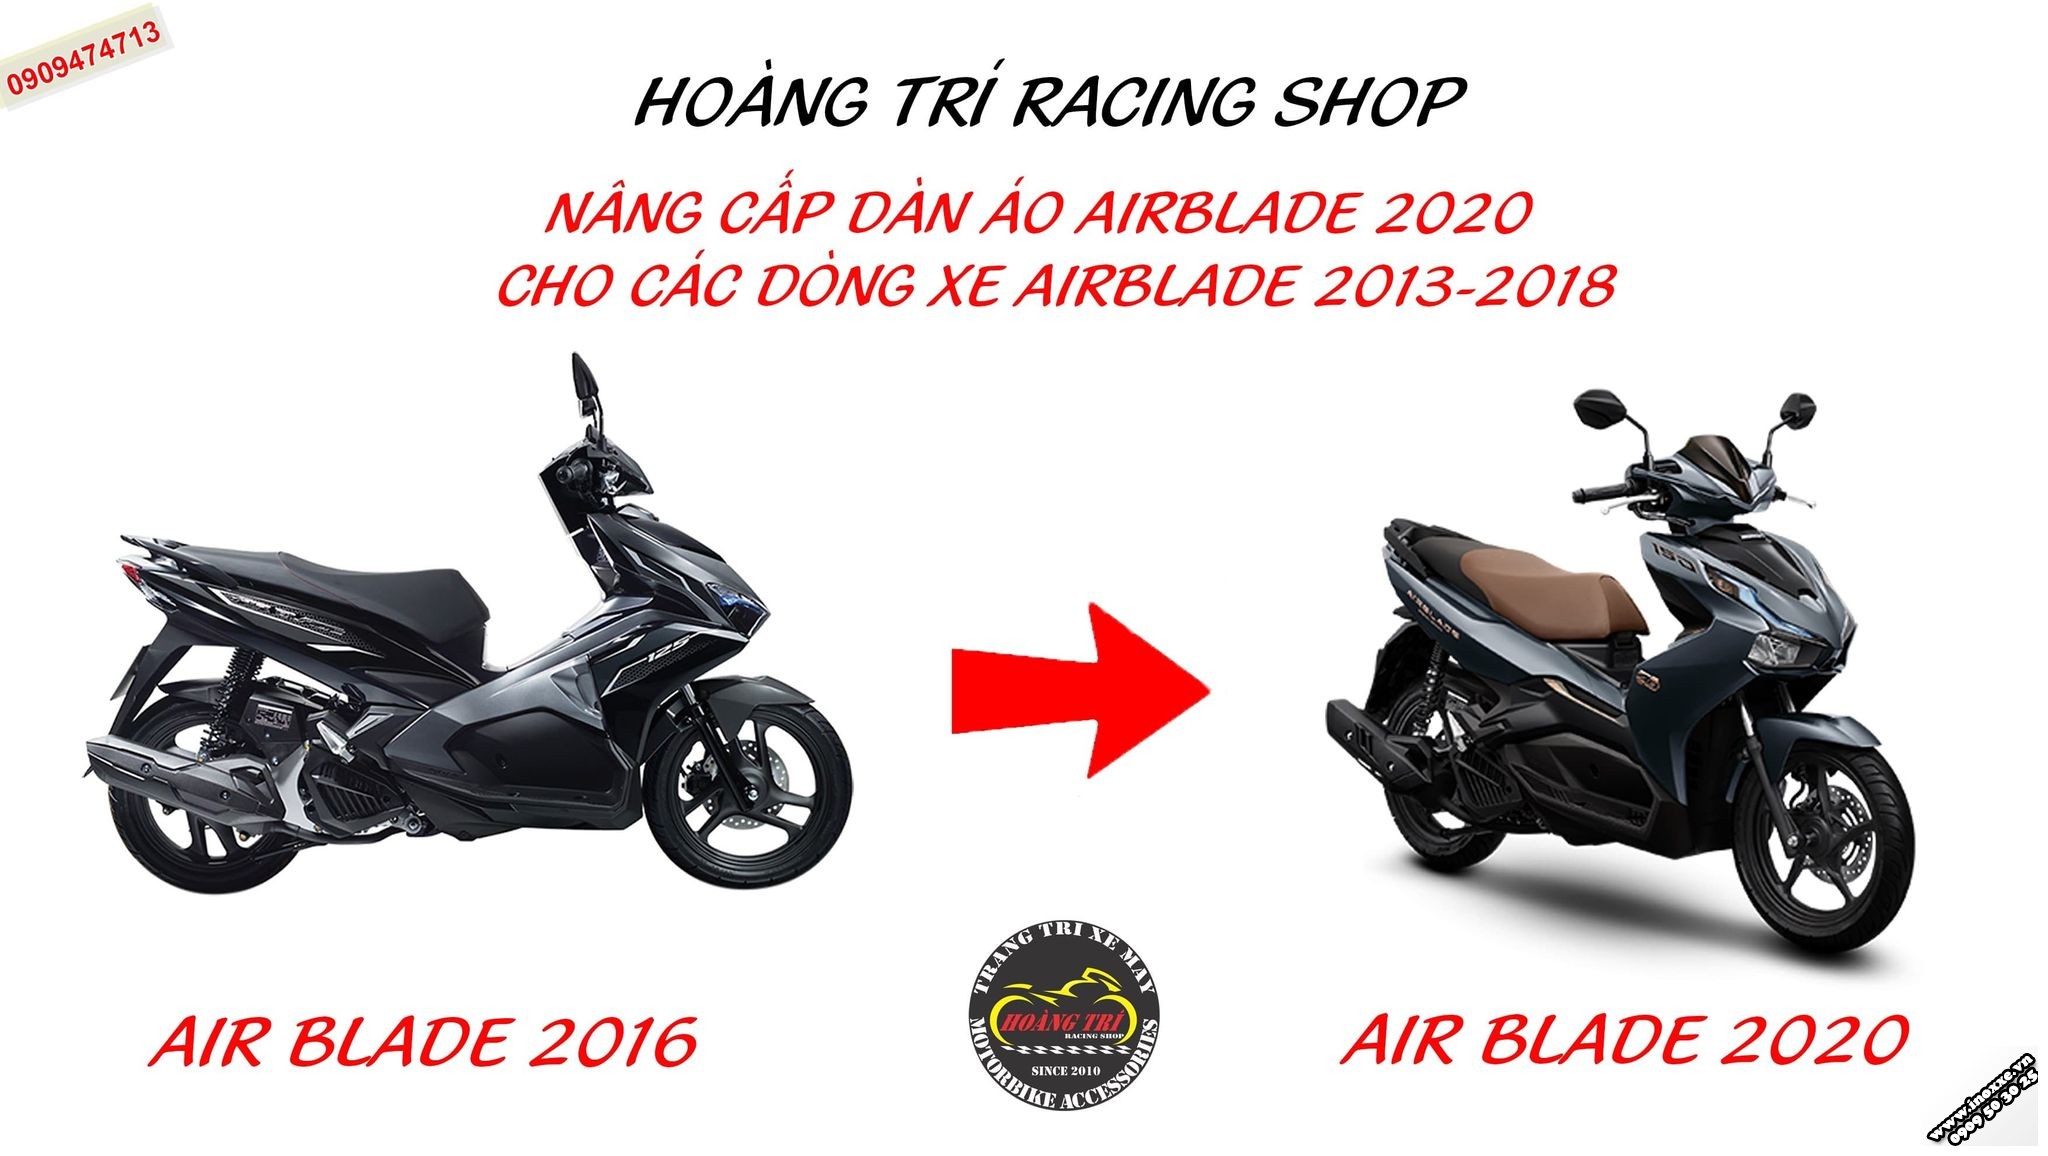 Nâng cấp dàn áo Airblade 2020 cho các dòng xe Airblade 2016-2019